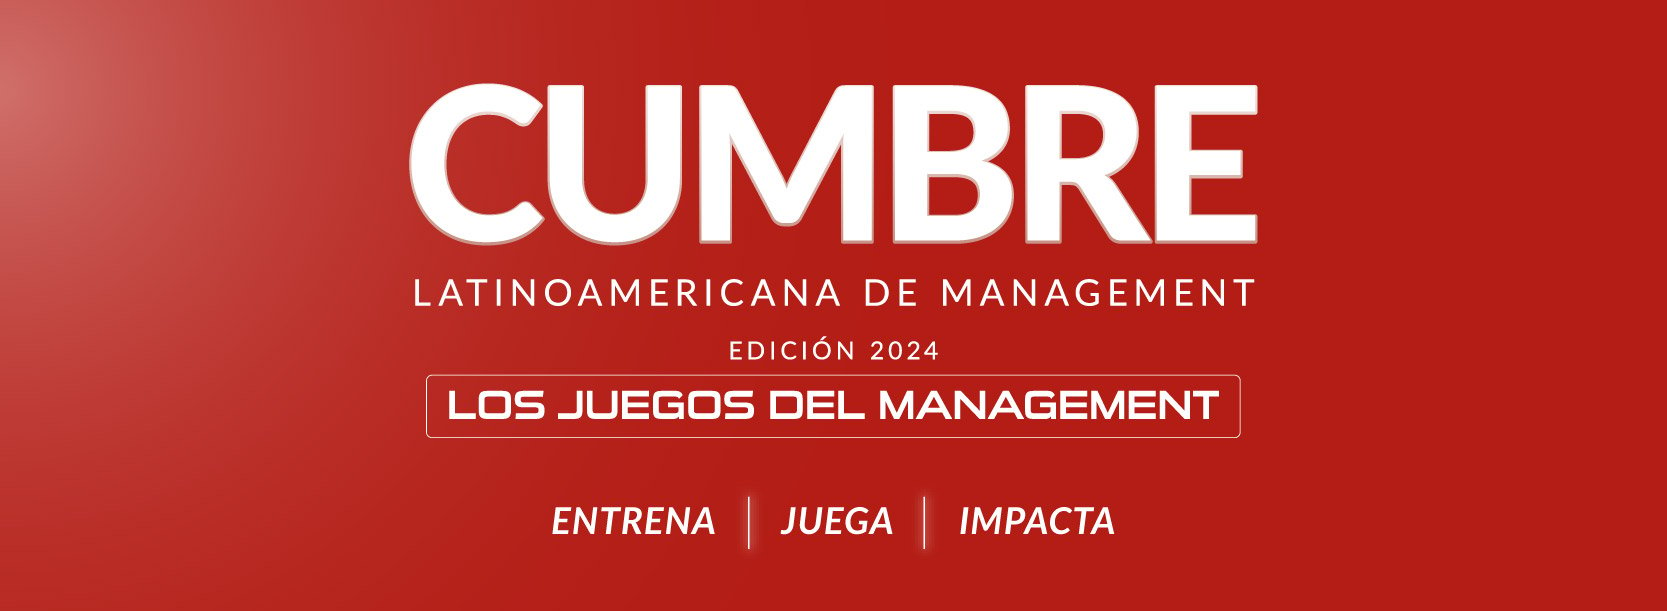 Llega el encuentro de negocios más importante de la región: Cumbre Latinoamericana de Management ADEN 2024